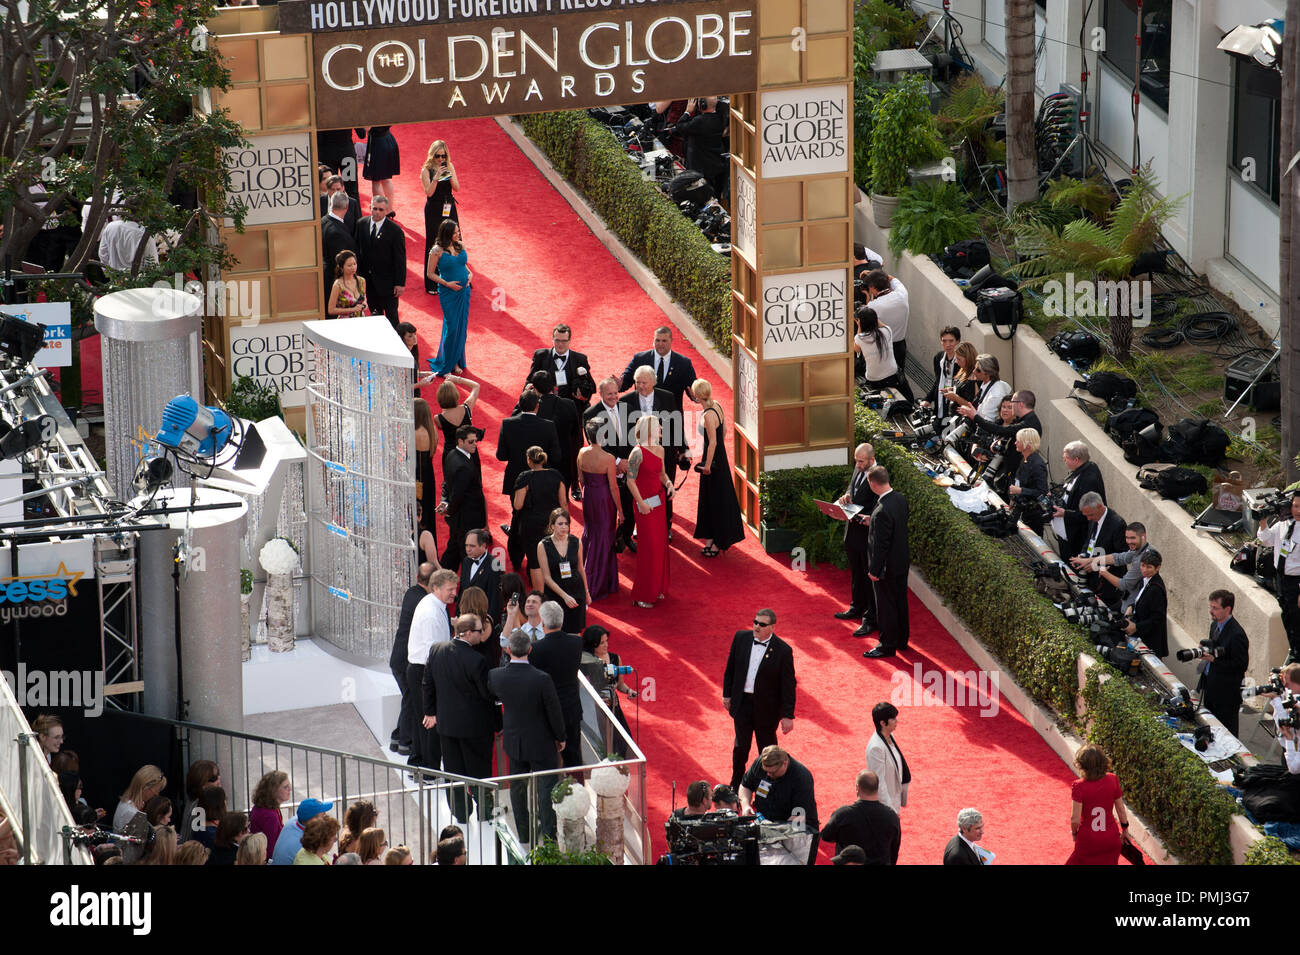 Les célébrités arrivent à la 68e assemblée annuelle Golden Globe Awards au Beverly Hilton de Los Angeles, CA le dimanche, 16 janvier 2011. Référence de fichier #  30825 621 pour un usage éditorial uniquement - Tous droits réservés Banque D'Images